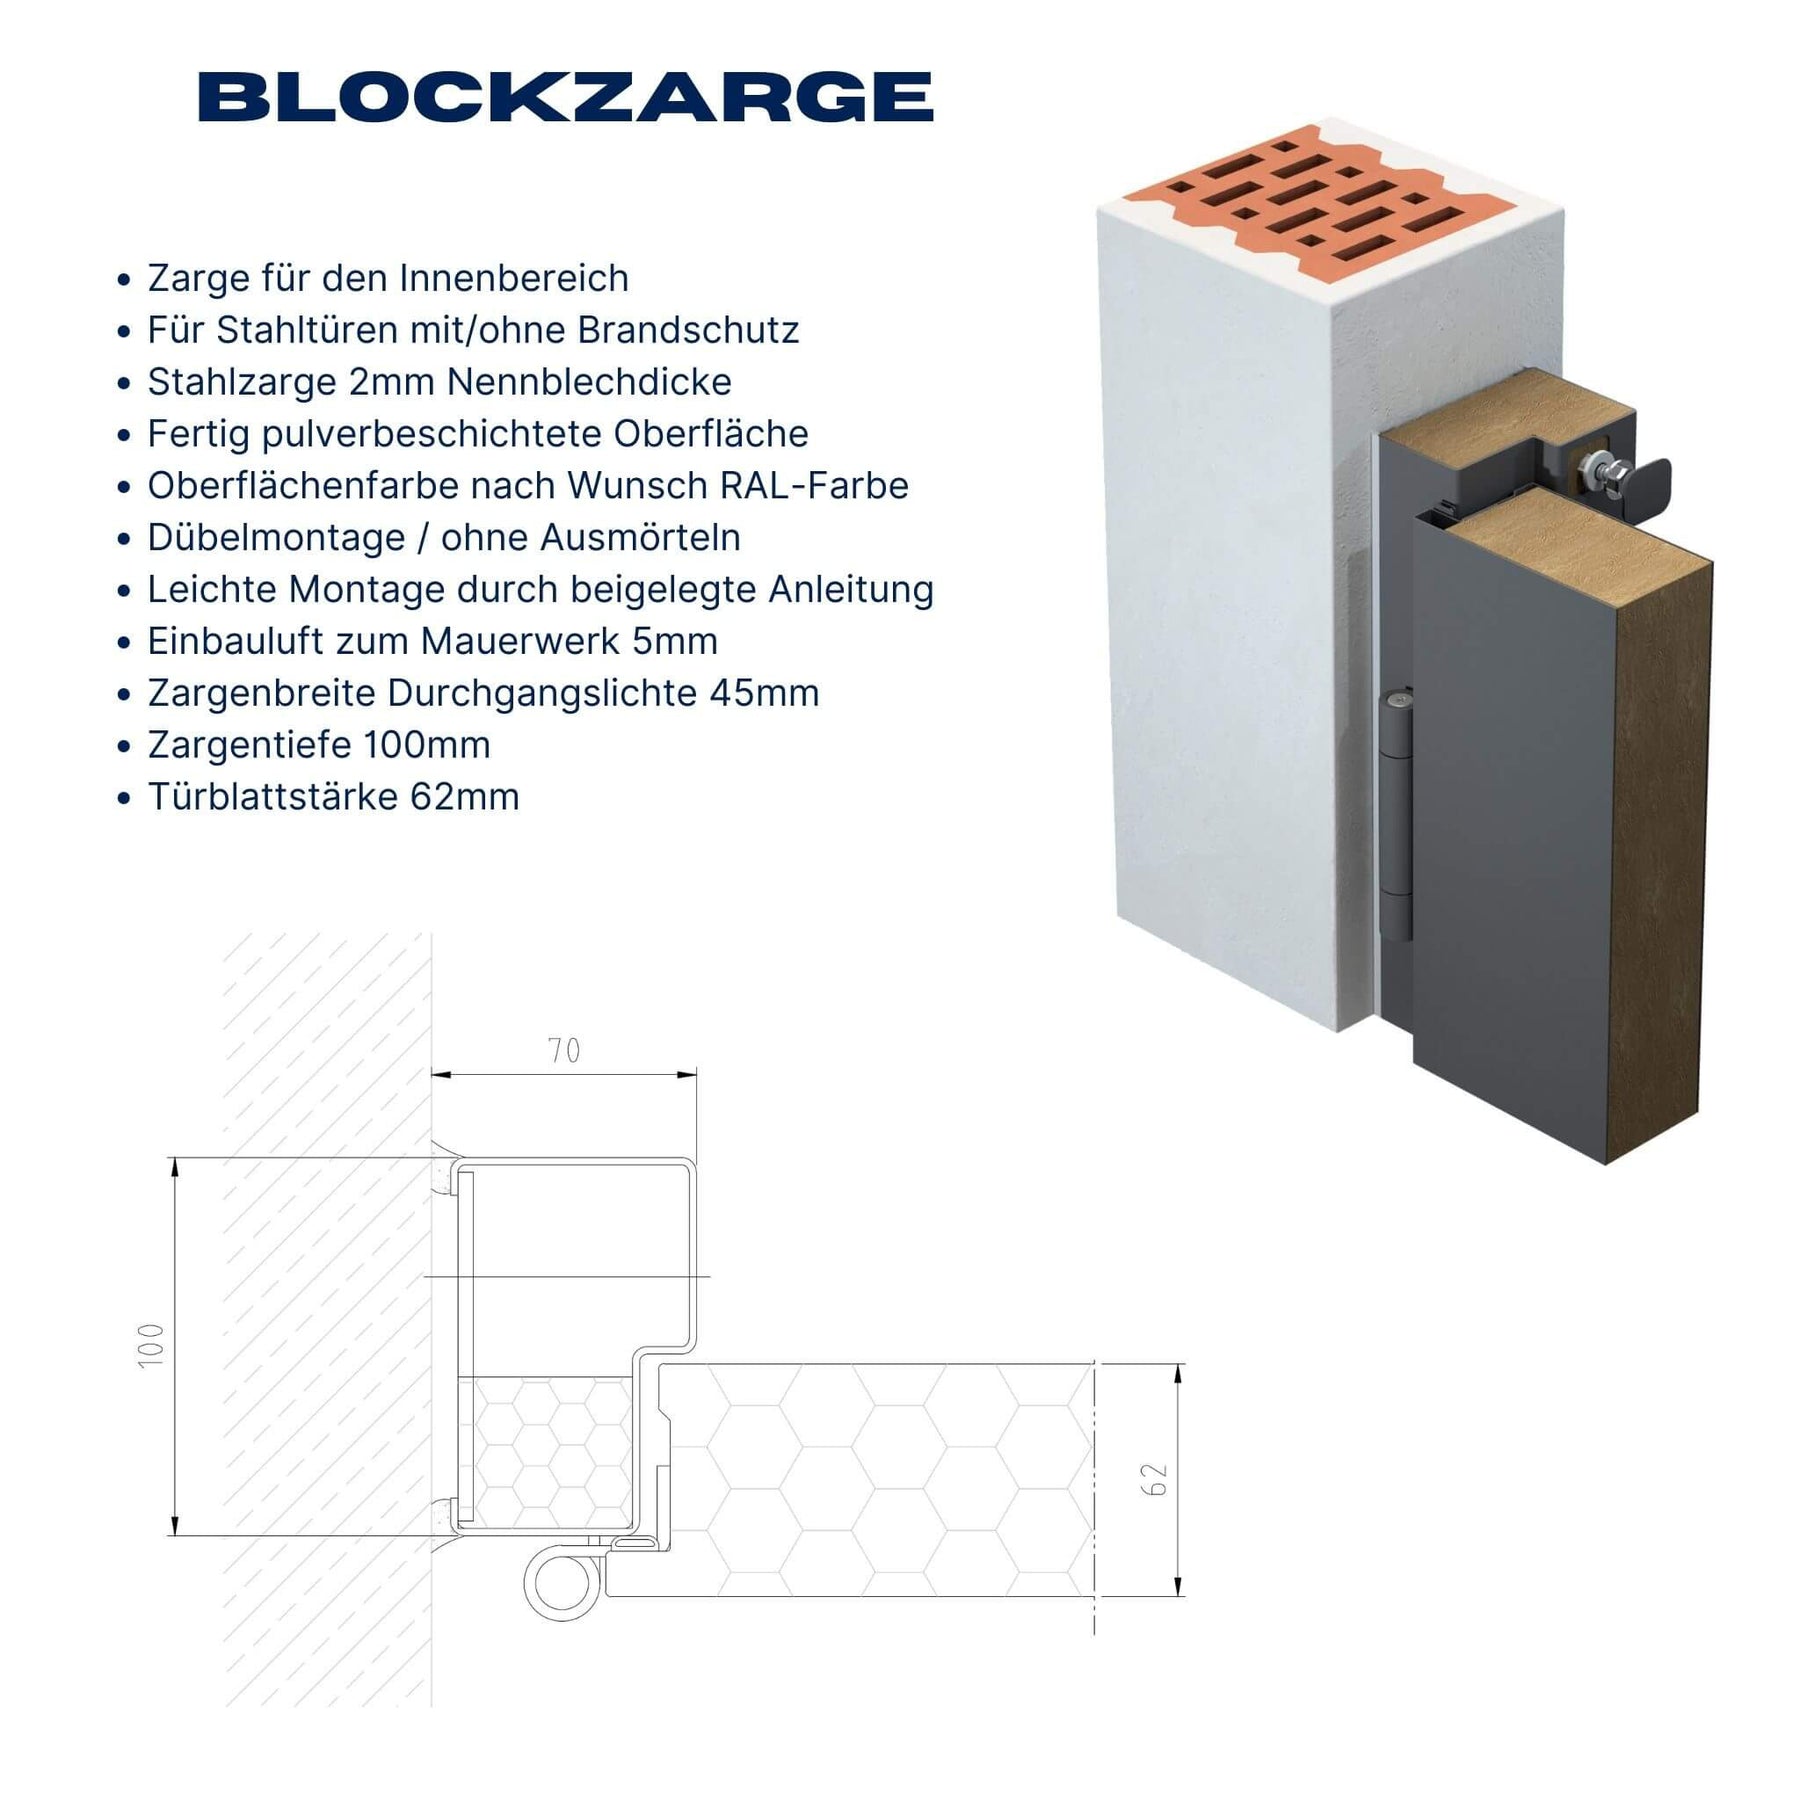 Zargendetail Blockzarge / Stahlzarge für Feuerschutztüren bei Metalltür